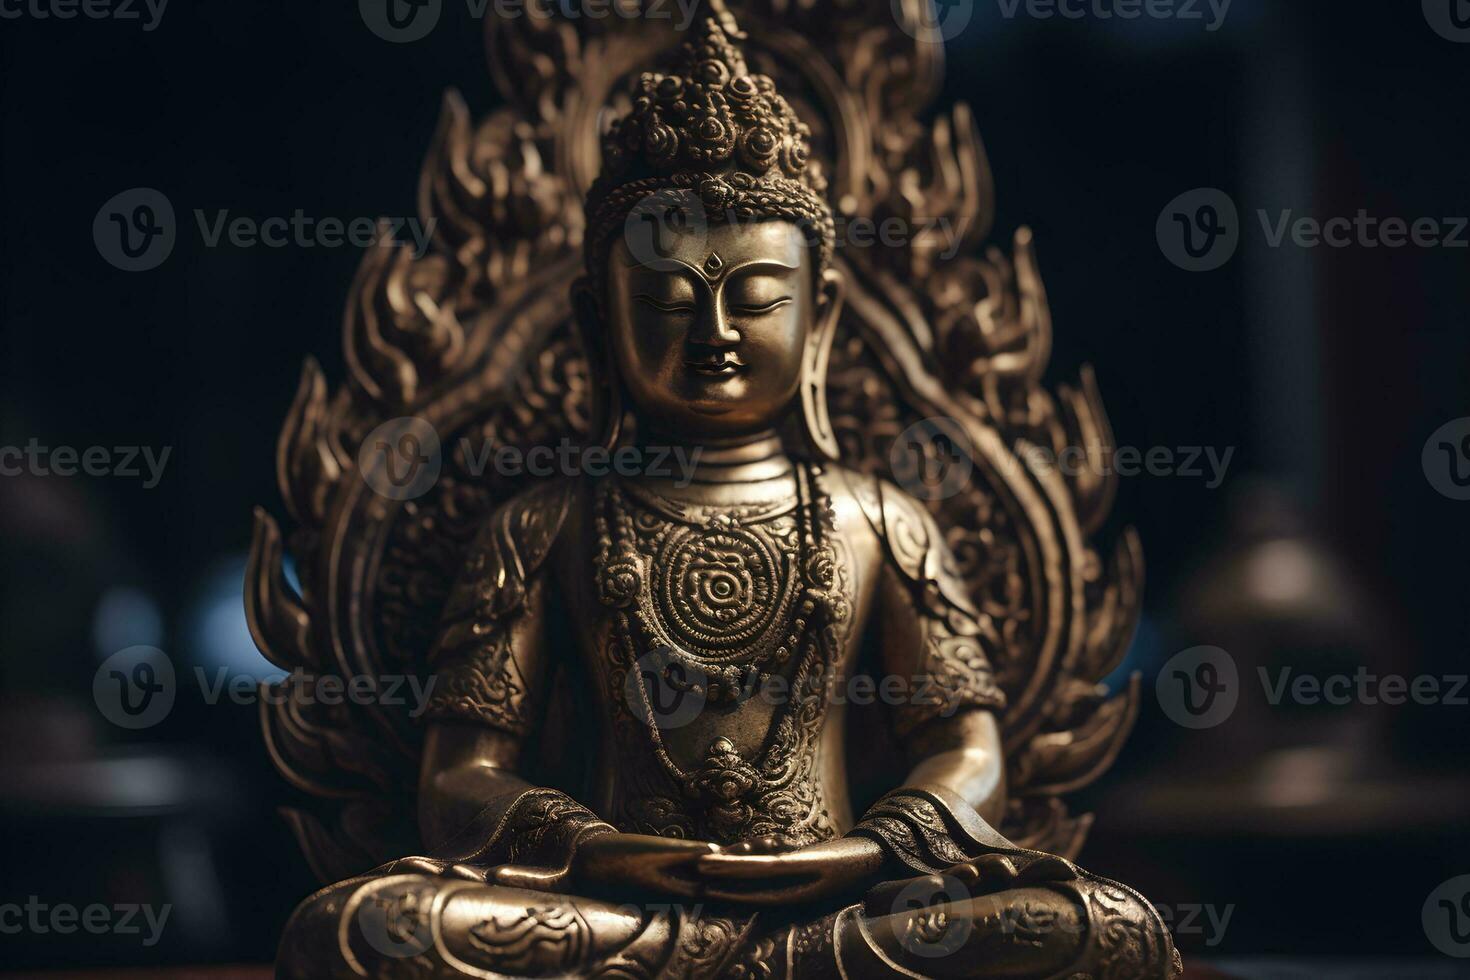 en gyllene staty av en buddha i tempel foto